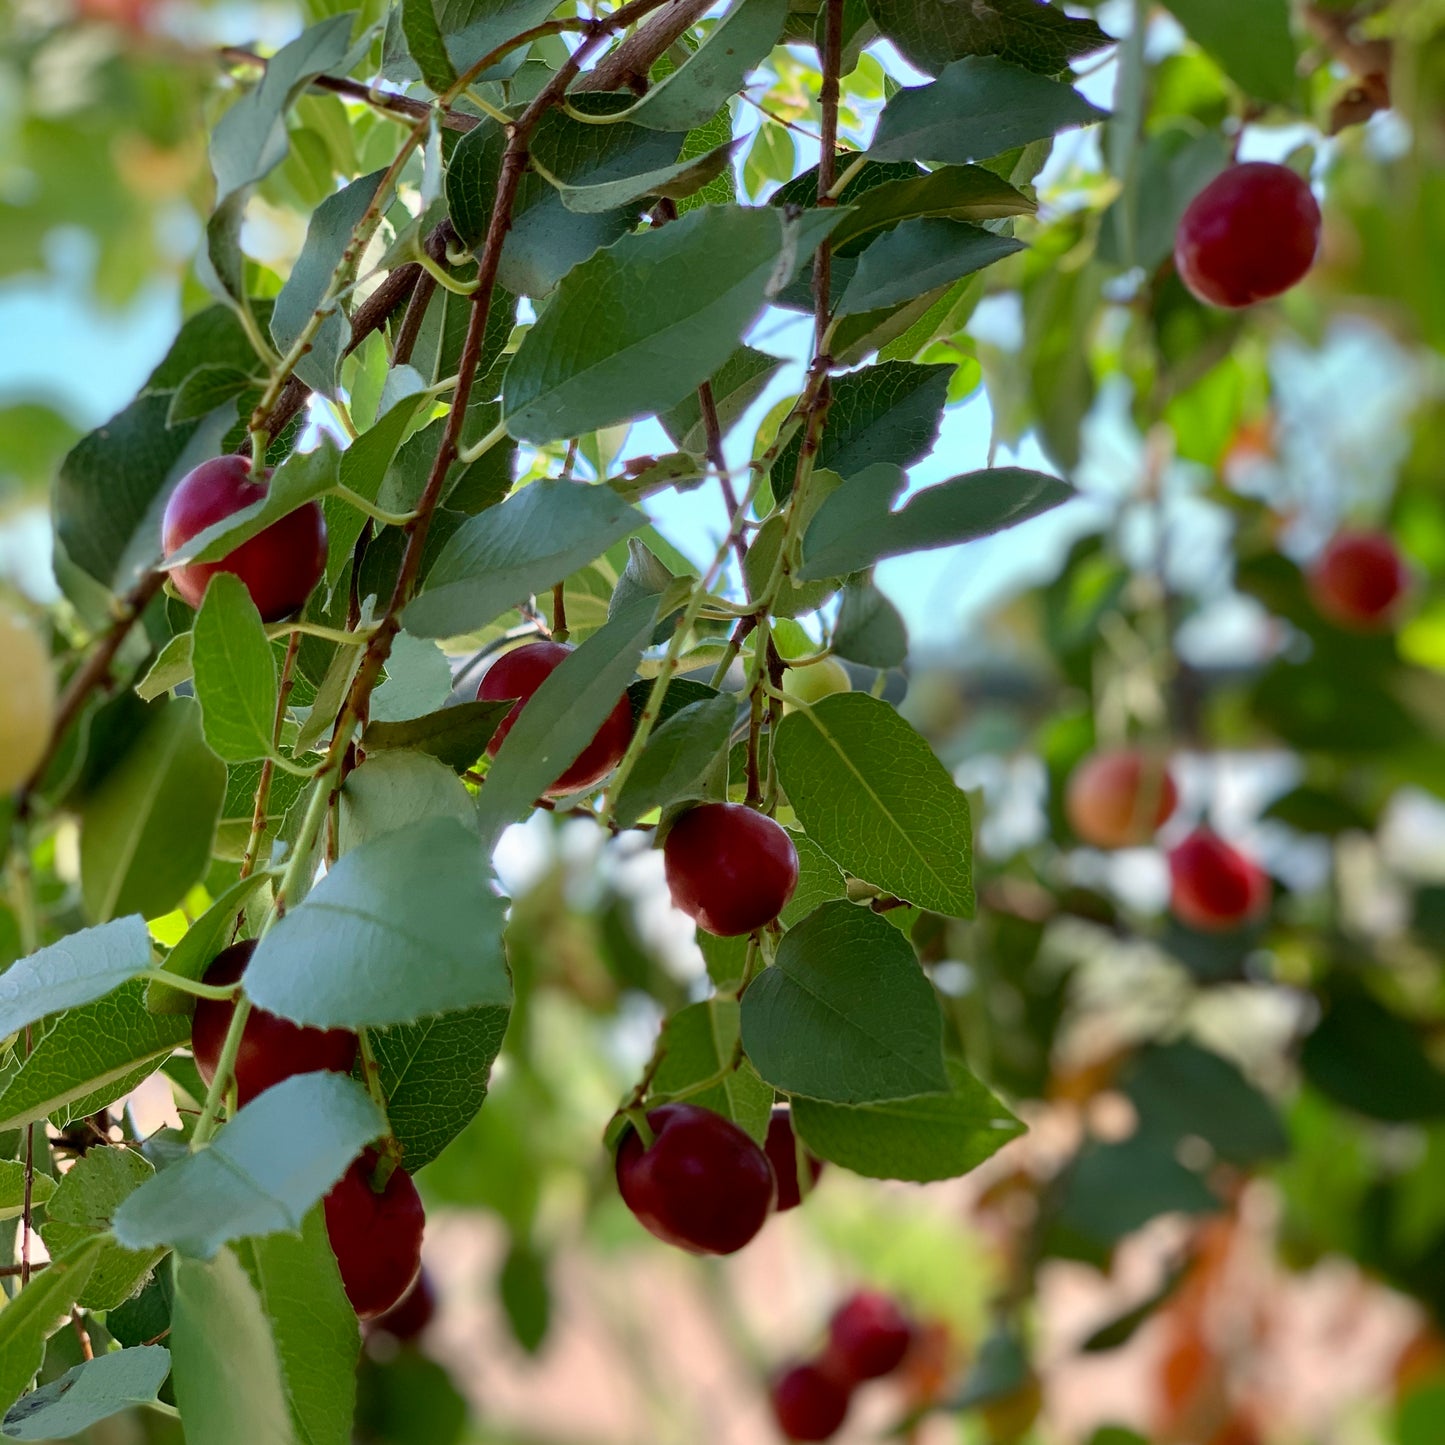 Holly Leaf Cherry, 'Prunus ilicifolia'